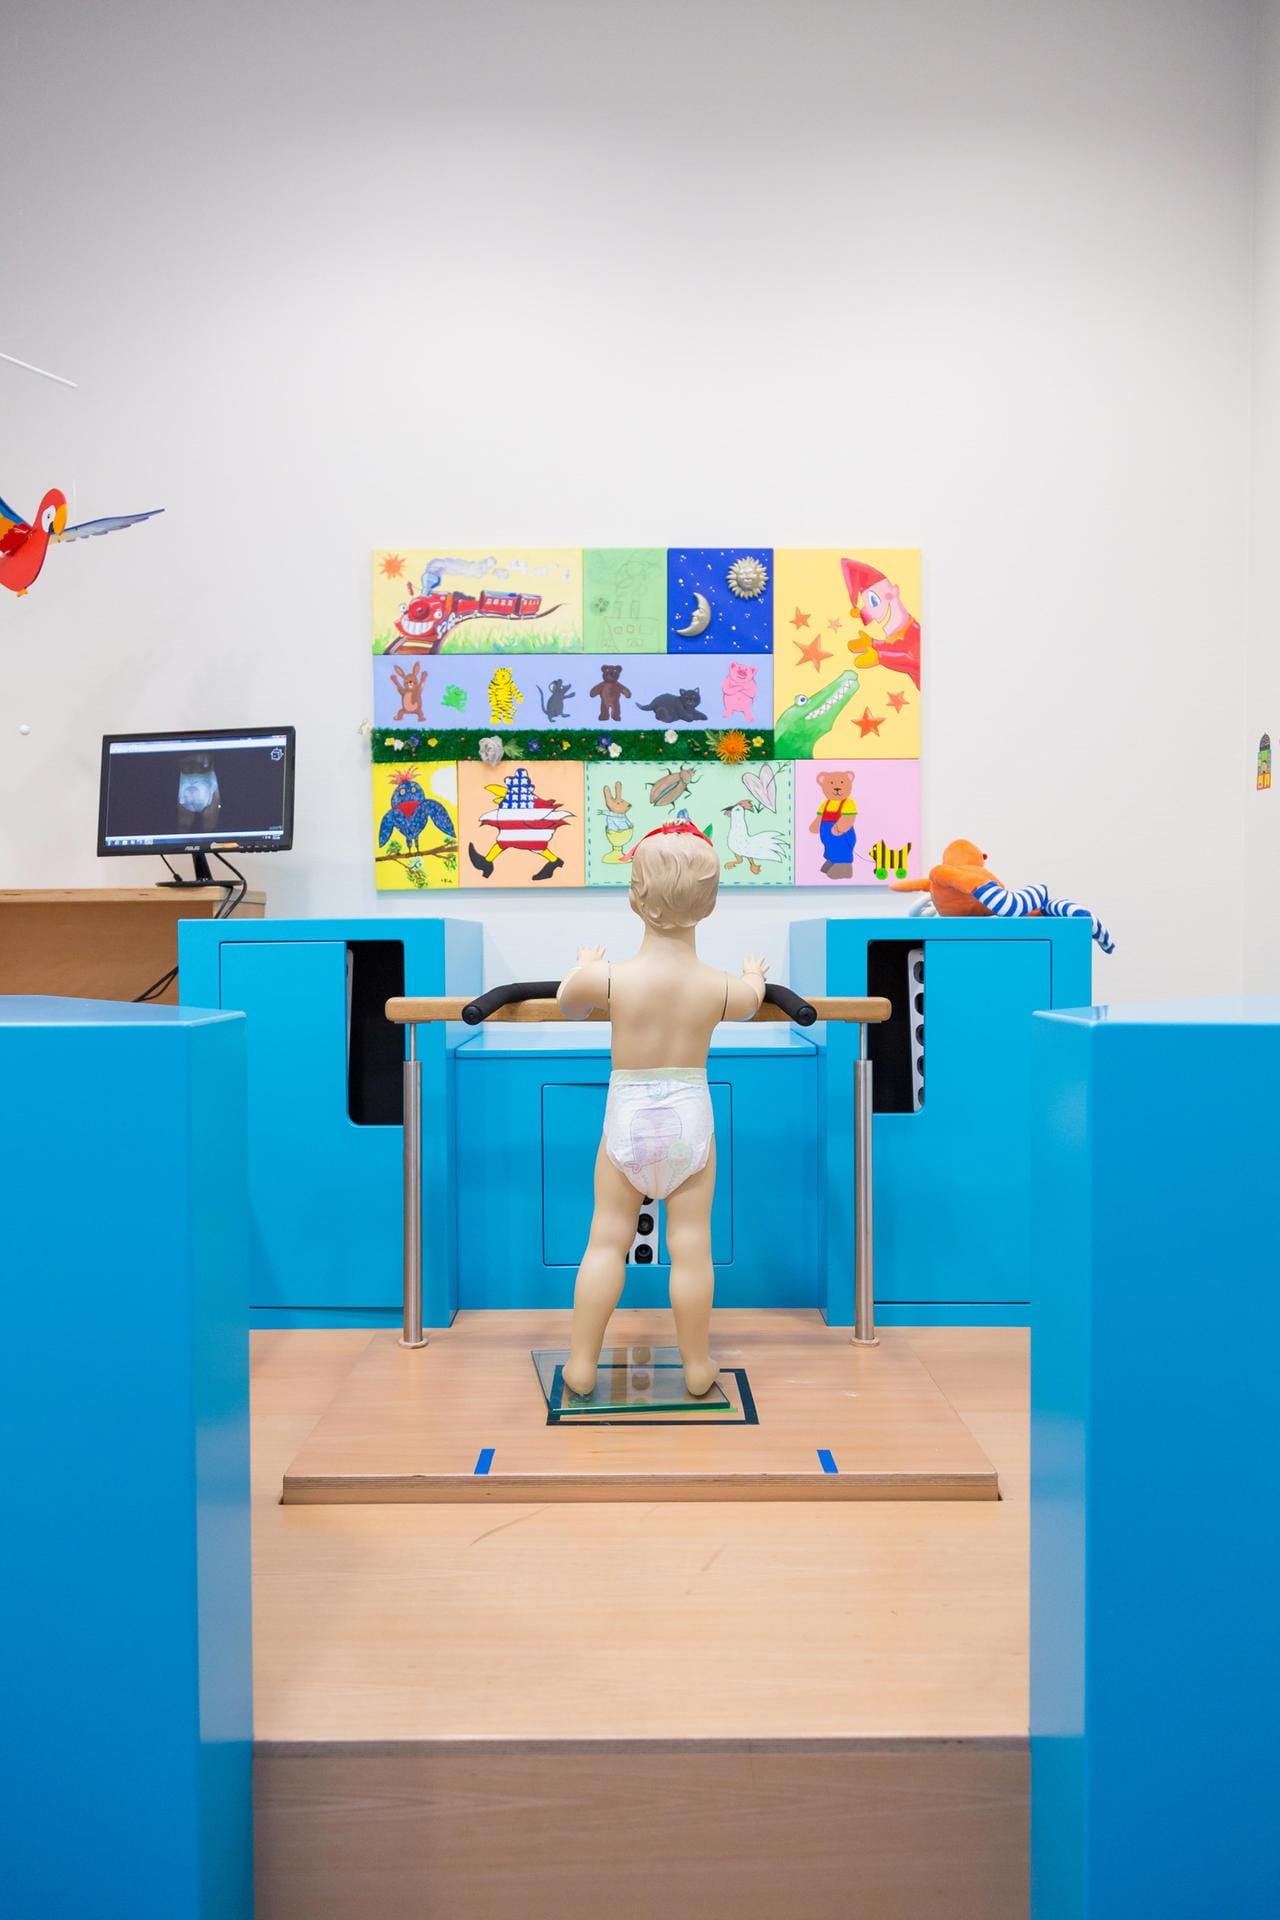 Mit einem 3D-Scanner können die Windelentwickler blitzschnell die Proportionen eines Kindes und den Sitz der Windel erfassen. Hier wird der Vorgang mit einer Puppe demonstriert.